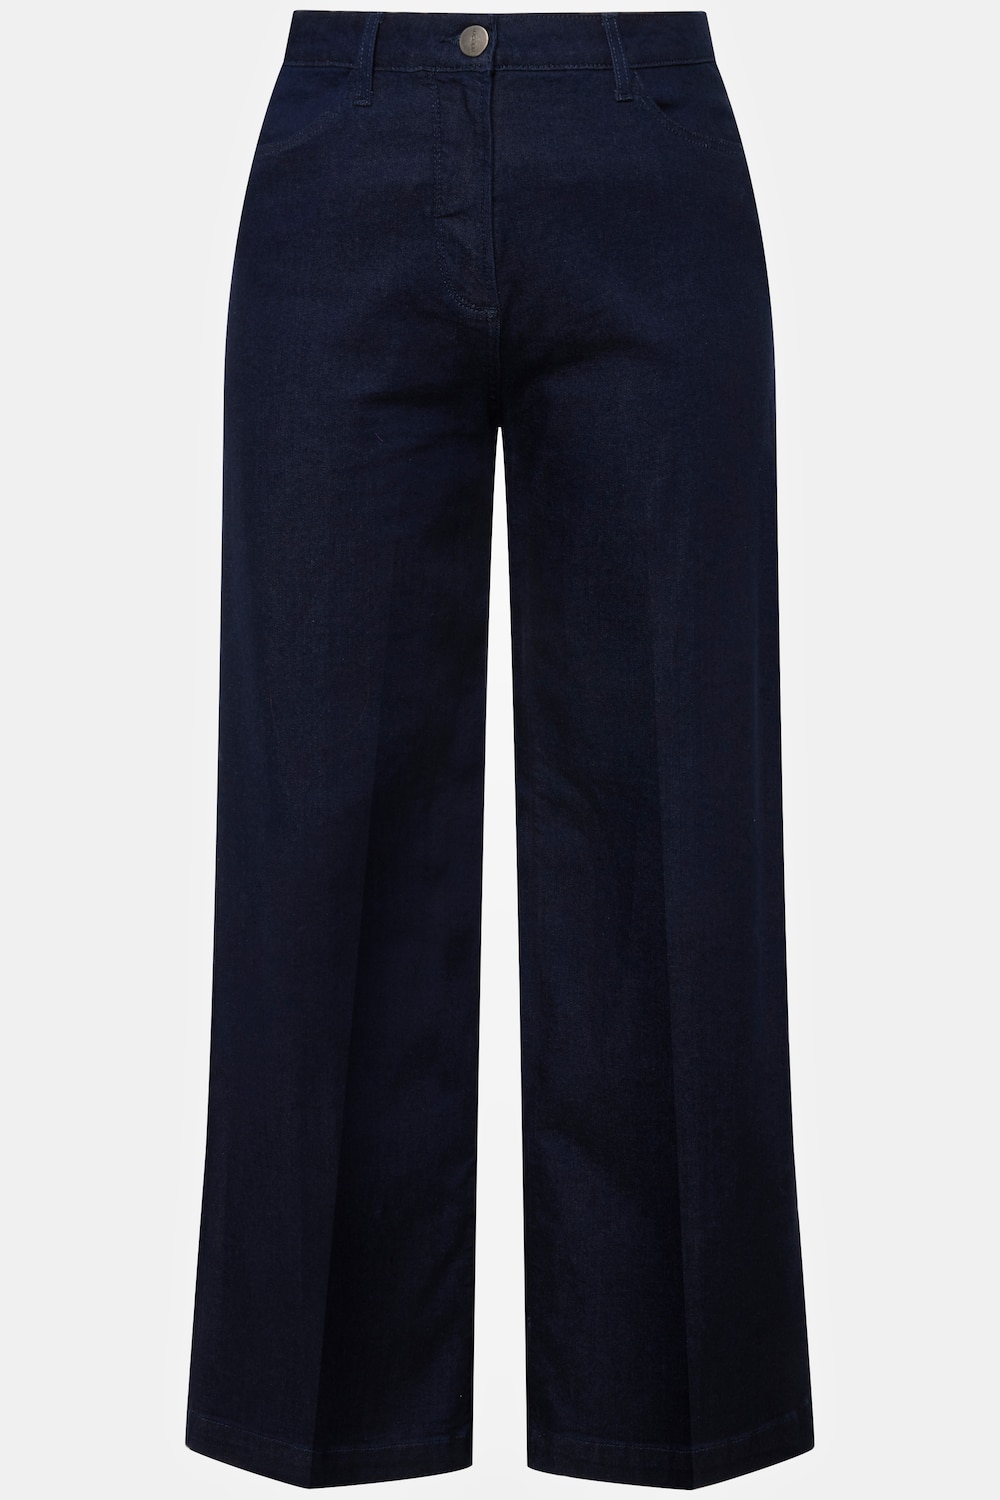 Grote Maten jeans, Dames, blauw, Maat: 52, Katoen/Synthetische vezels, Ulla Popken